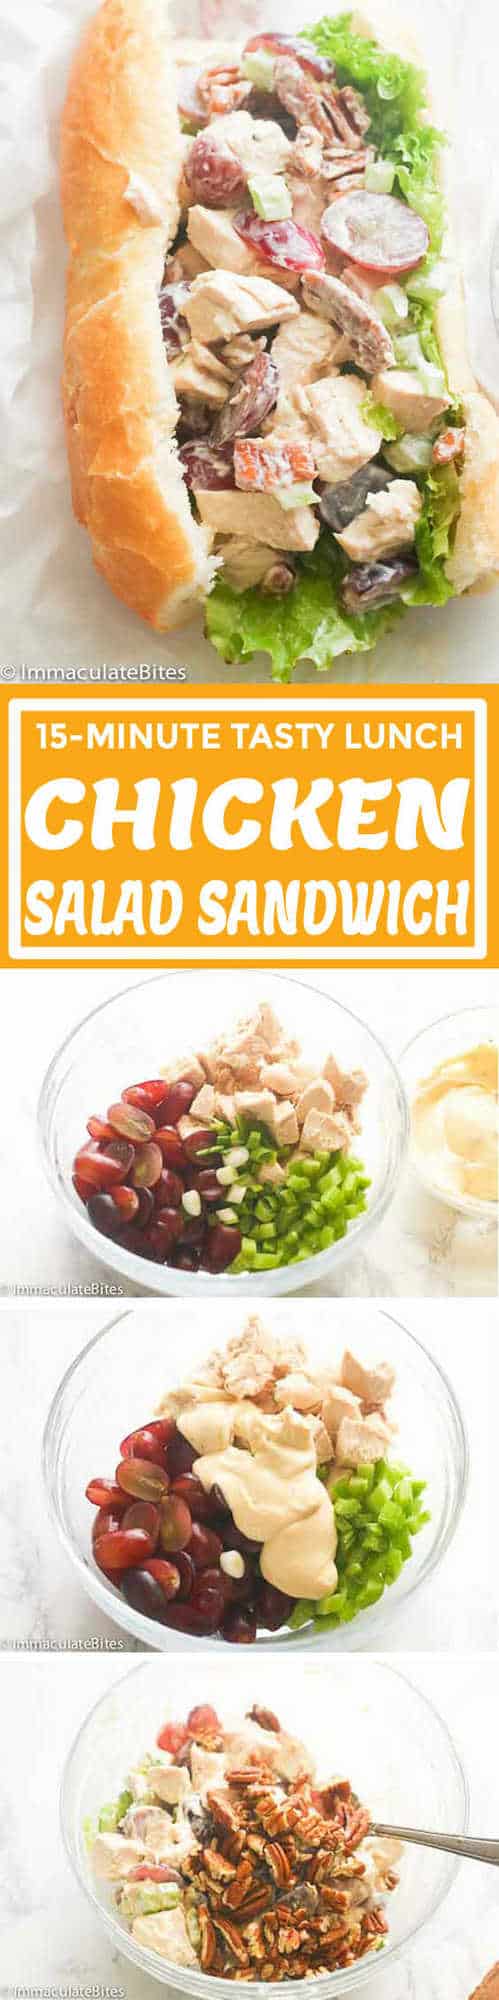 Chicken Salad Sandwich - Immaculate Bites